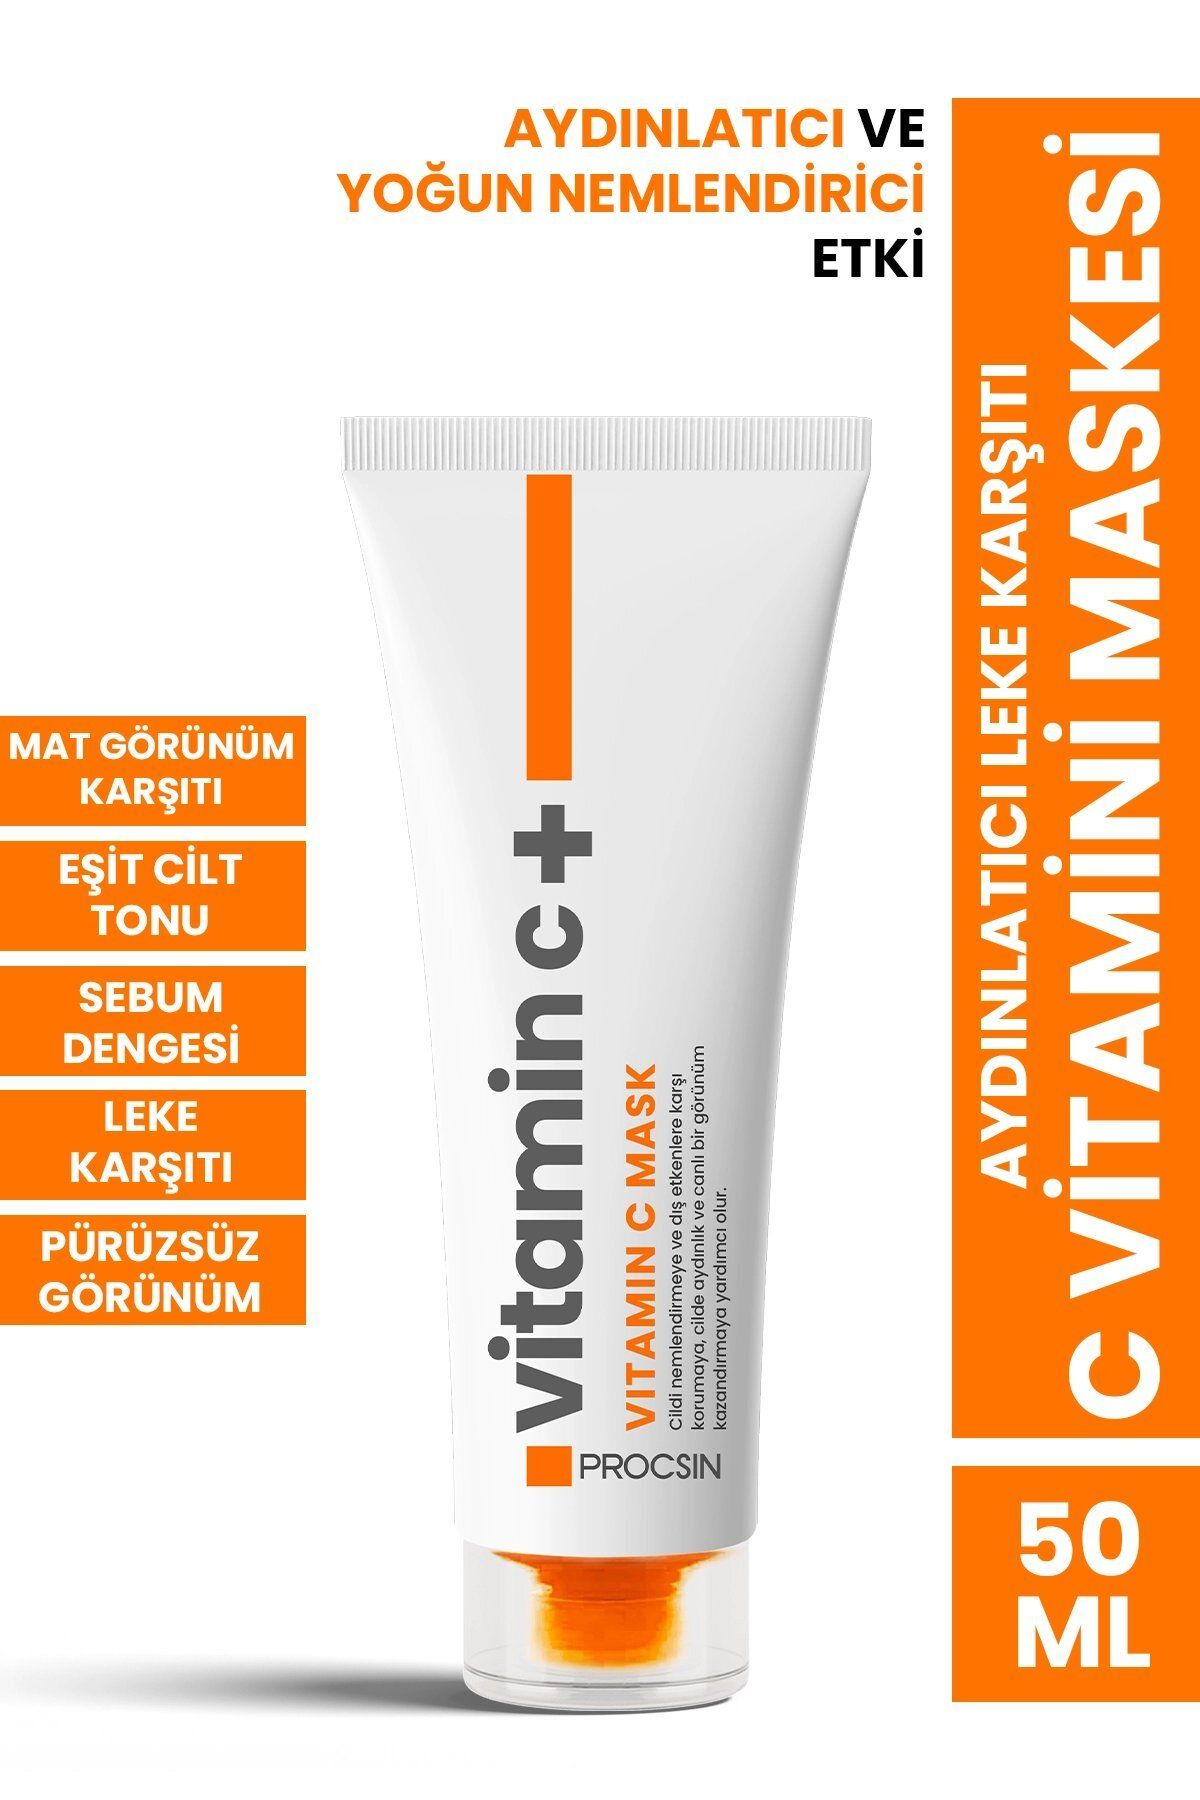 PROCSIN Aydınlatıcı Leke Karşıtı C Vitamini Maskesi 50 ml